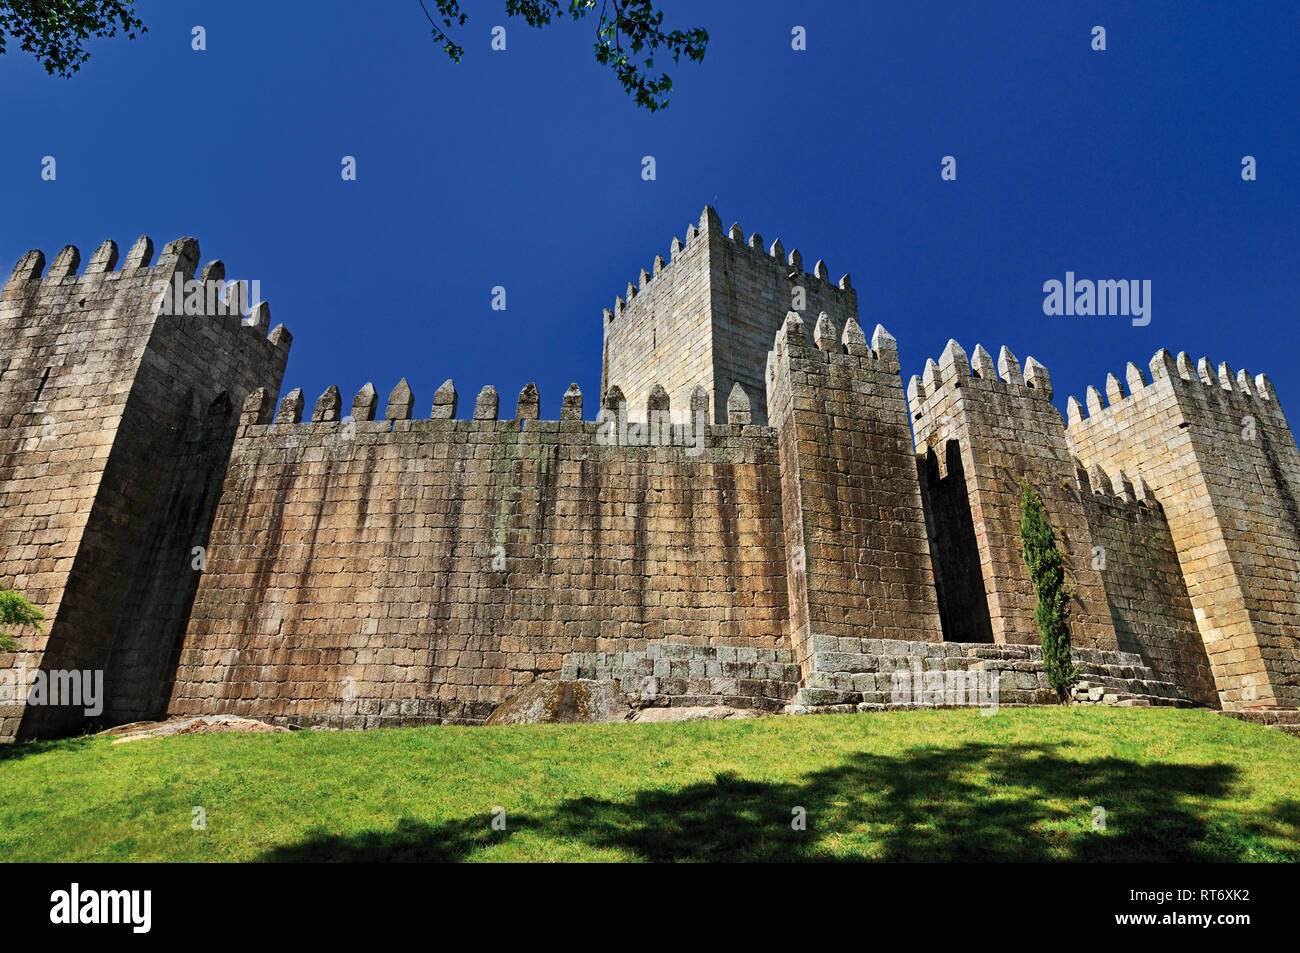 Vue latérale du château médiéval préservé sur une colline avec ciel bleu Banque D'Images